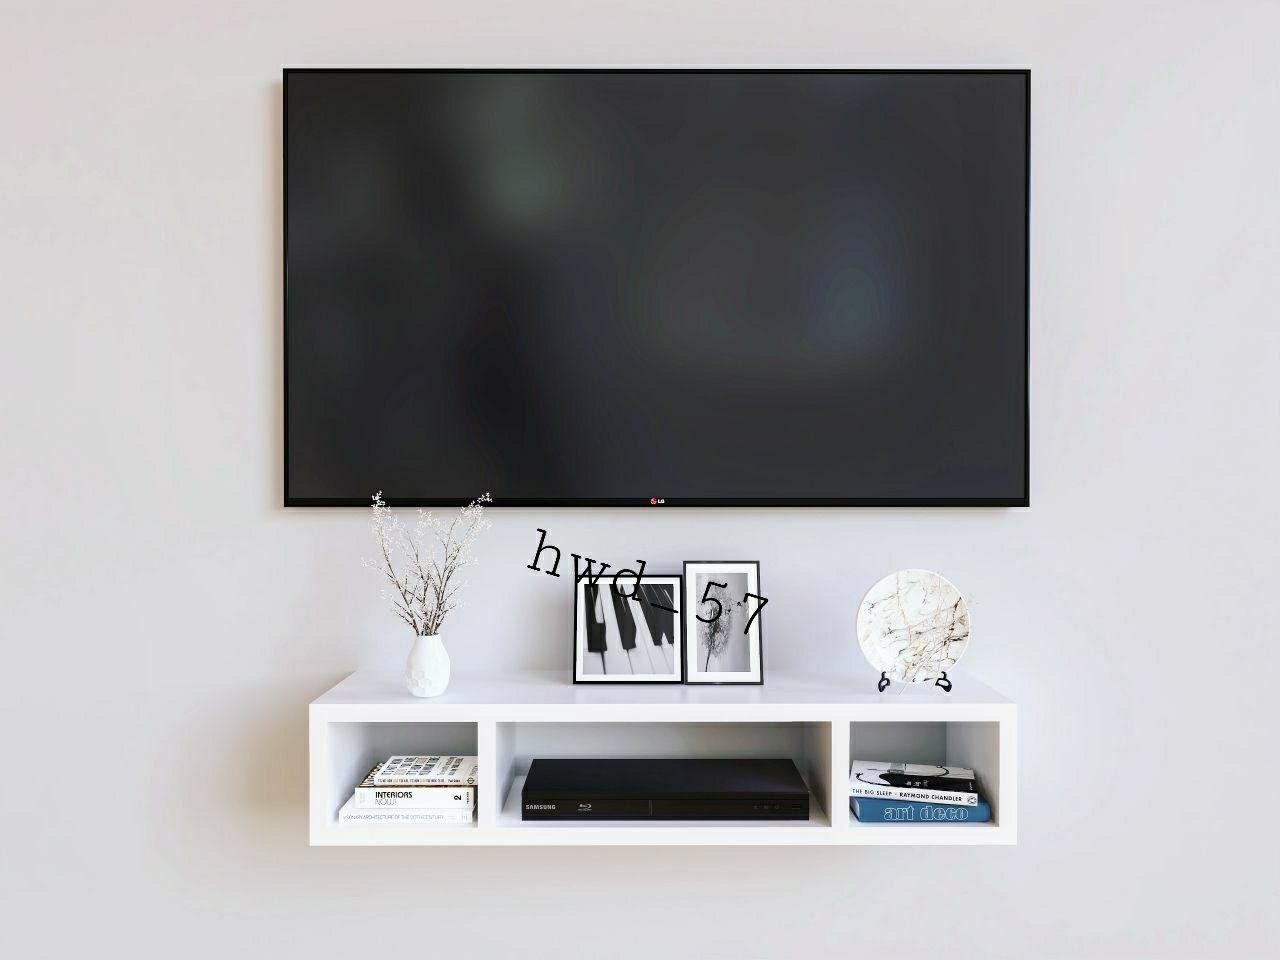 Gunakan Furniture Dinding untuk Televisi